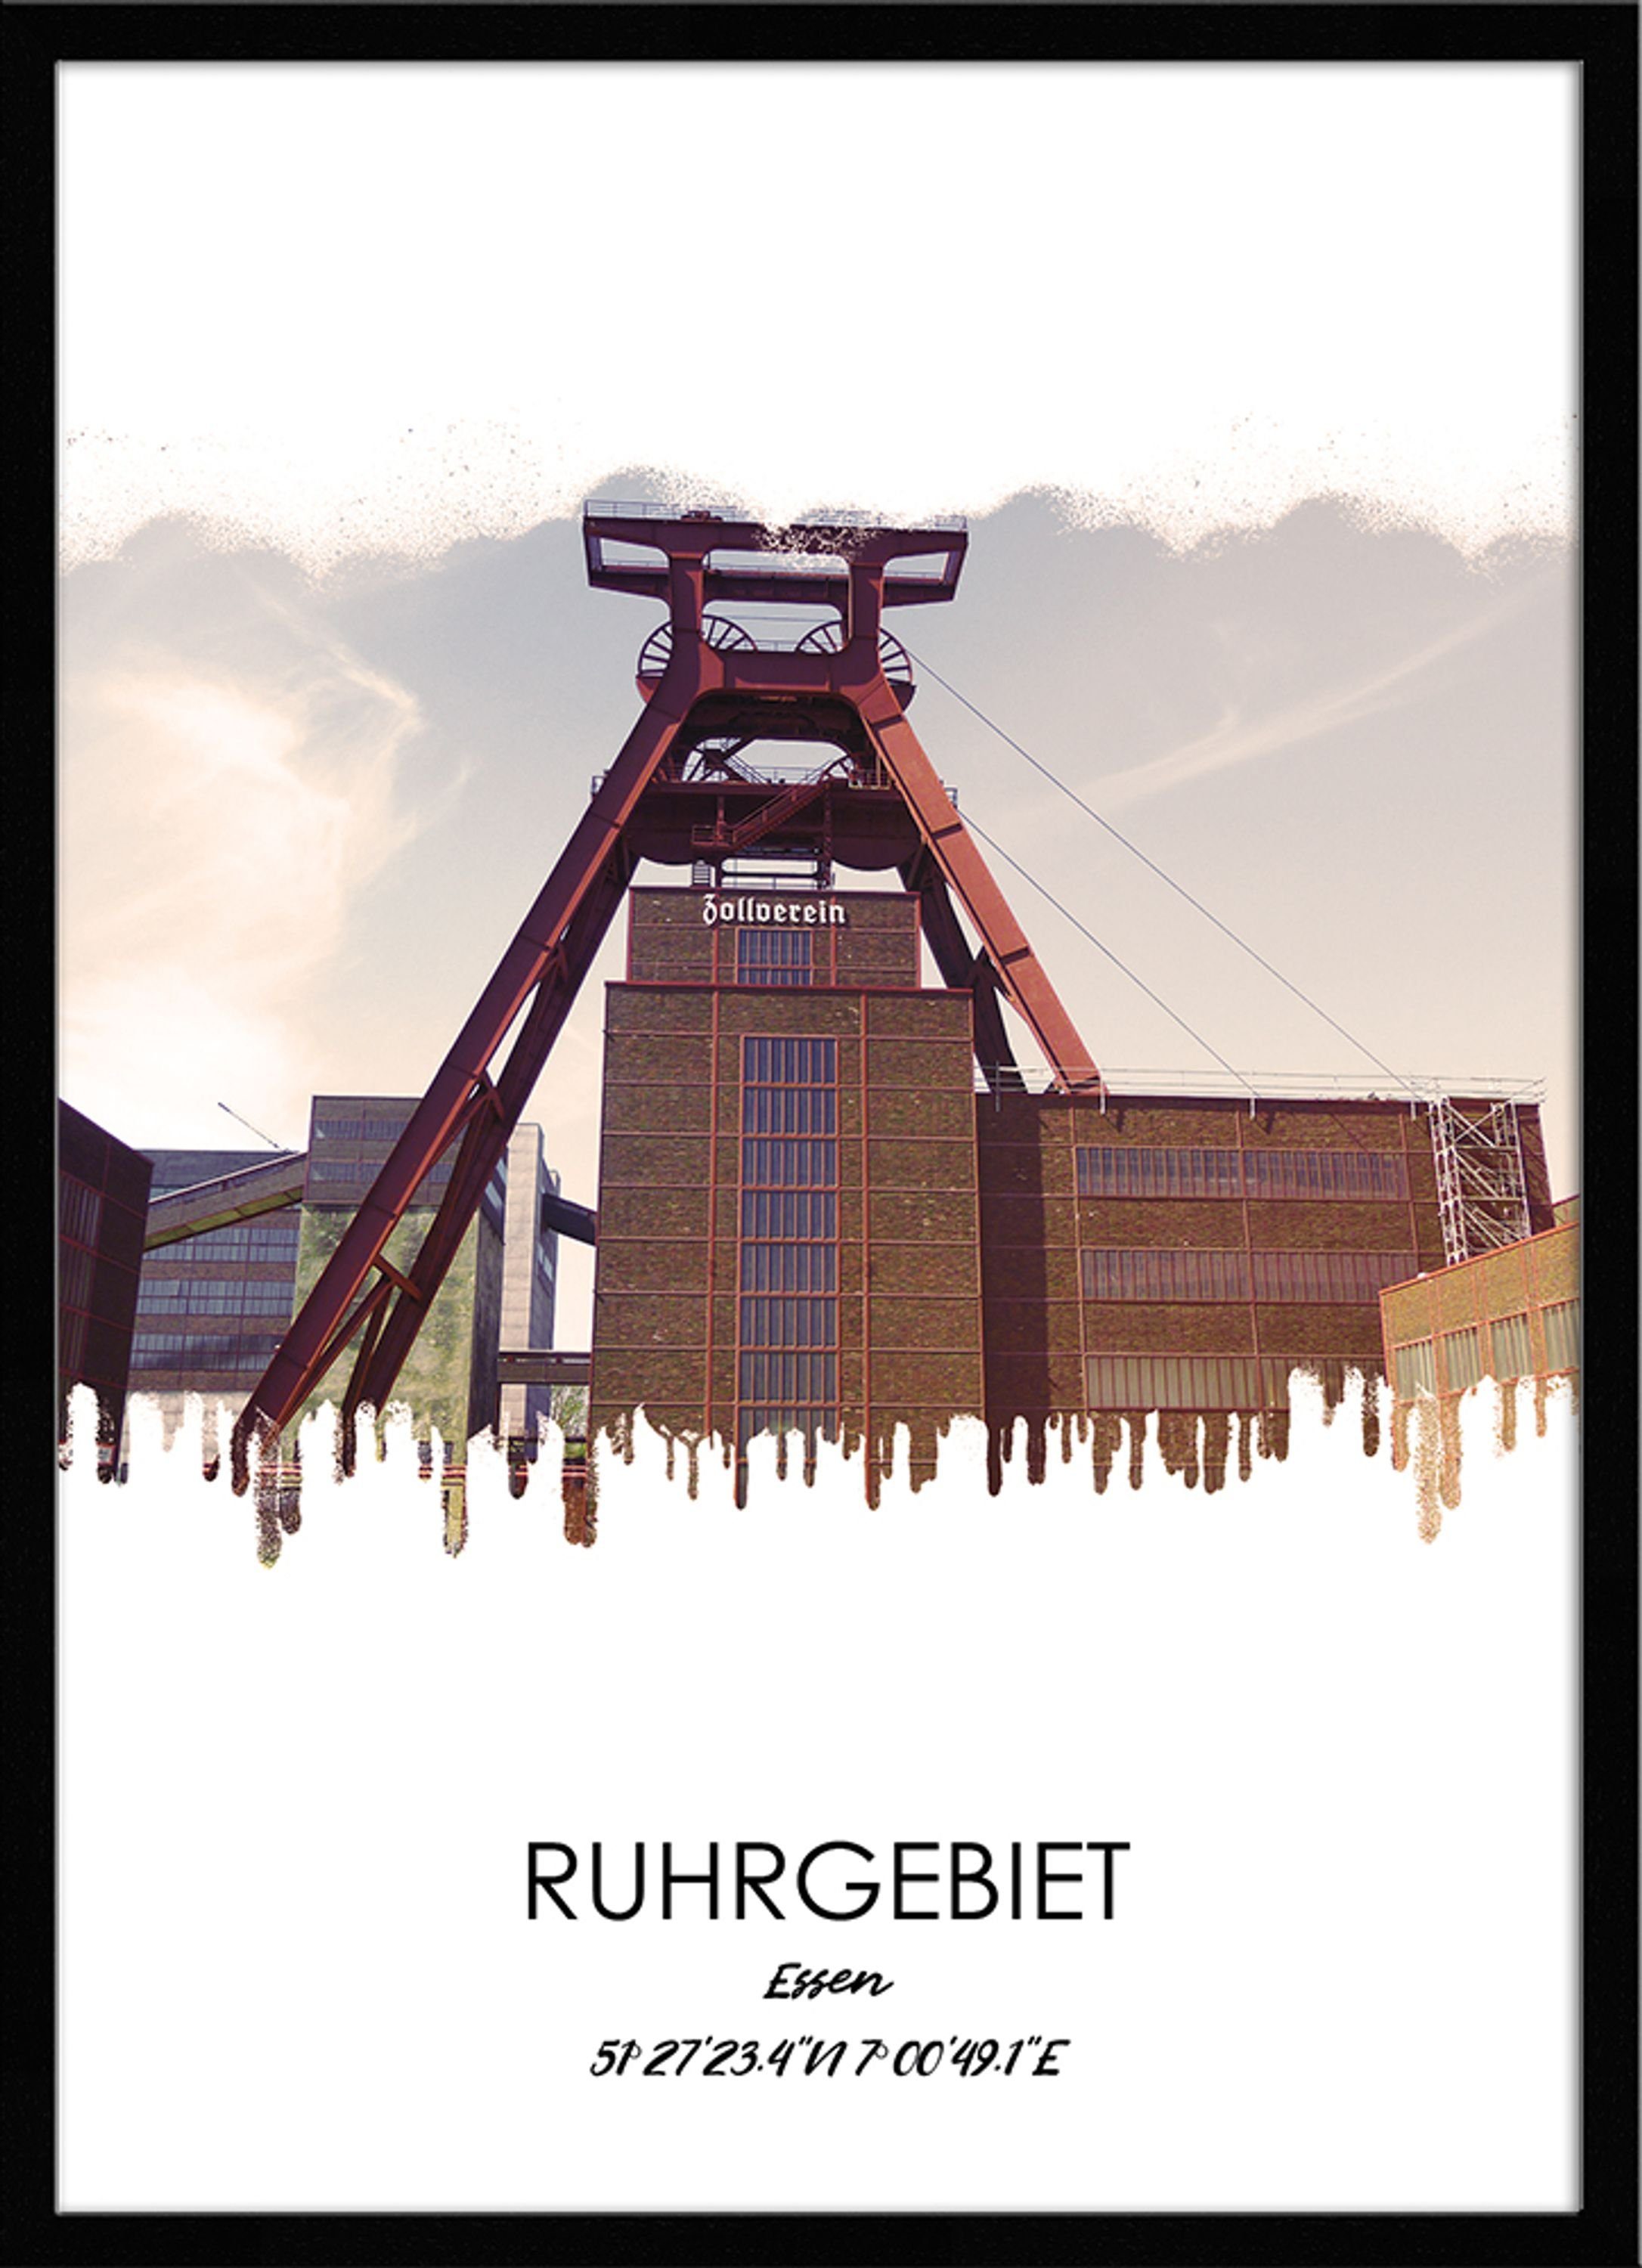 mit Ruhrgebiets-Städte: Rahmen Bild / Essen / Ruhrgebiet Essen, gerahmt Bild artissimo mit 51x71cm Design-Poster Rahmen